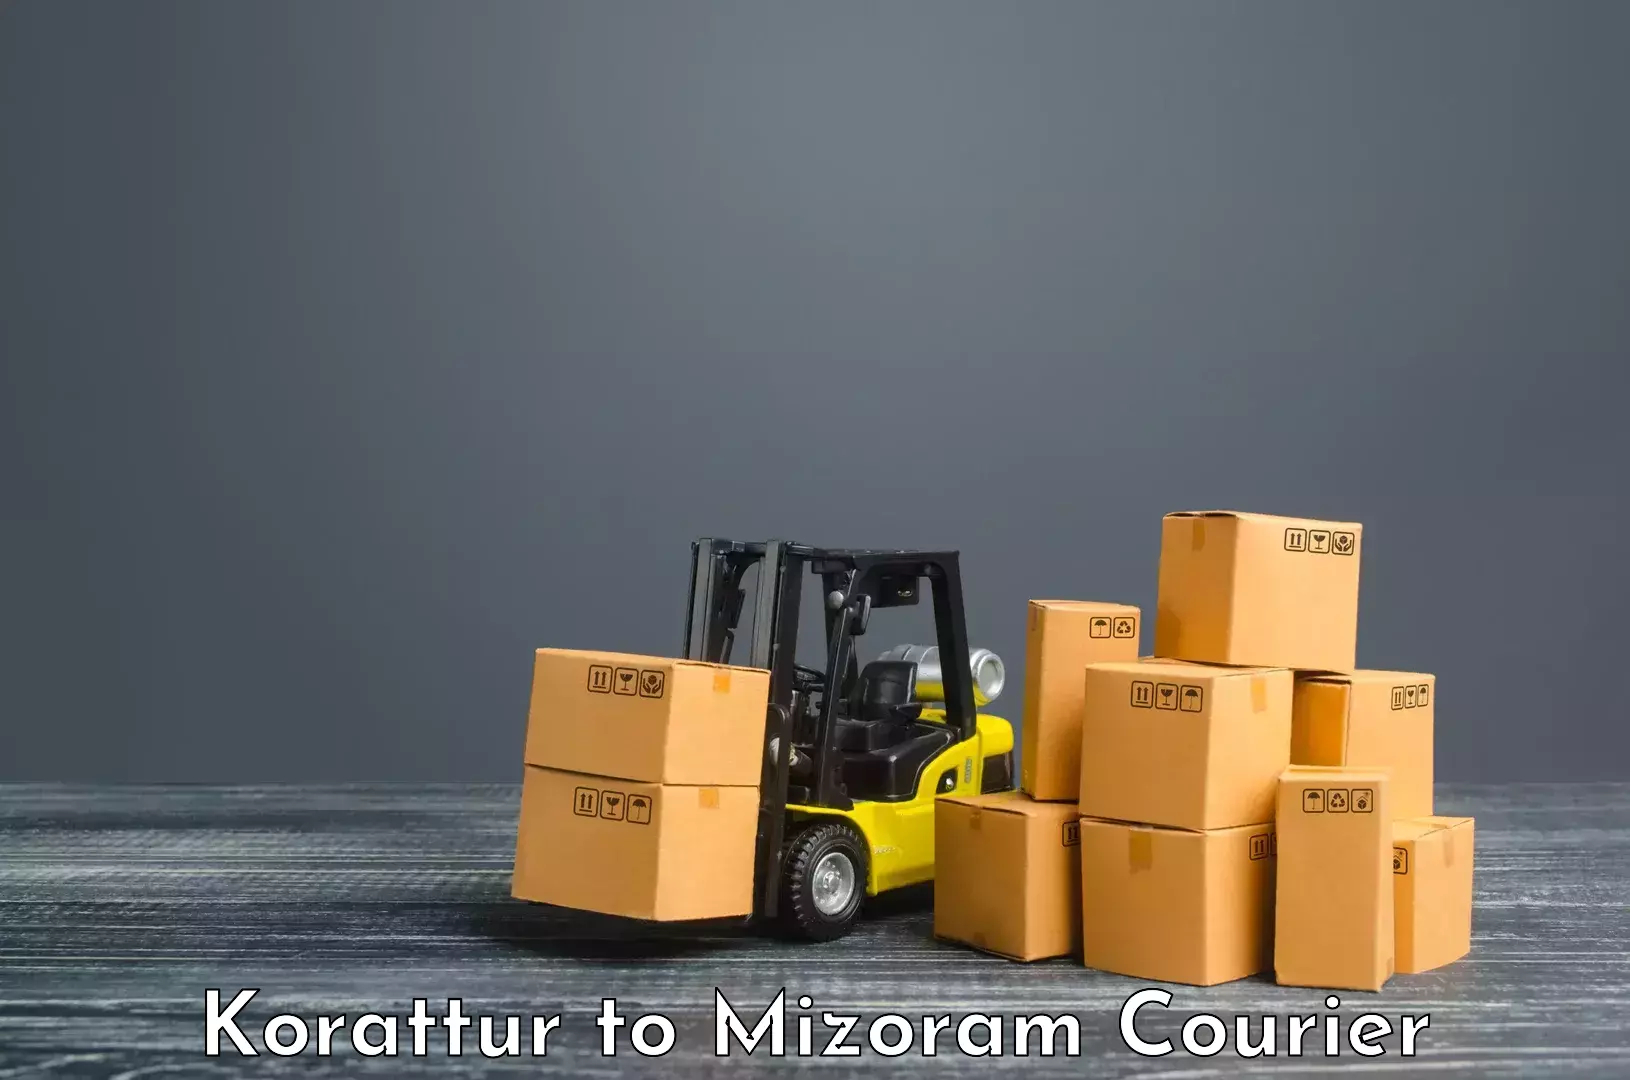 Digital shipping tools Korattur to Mizoram